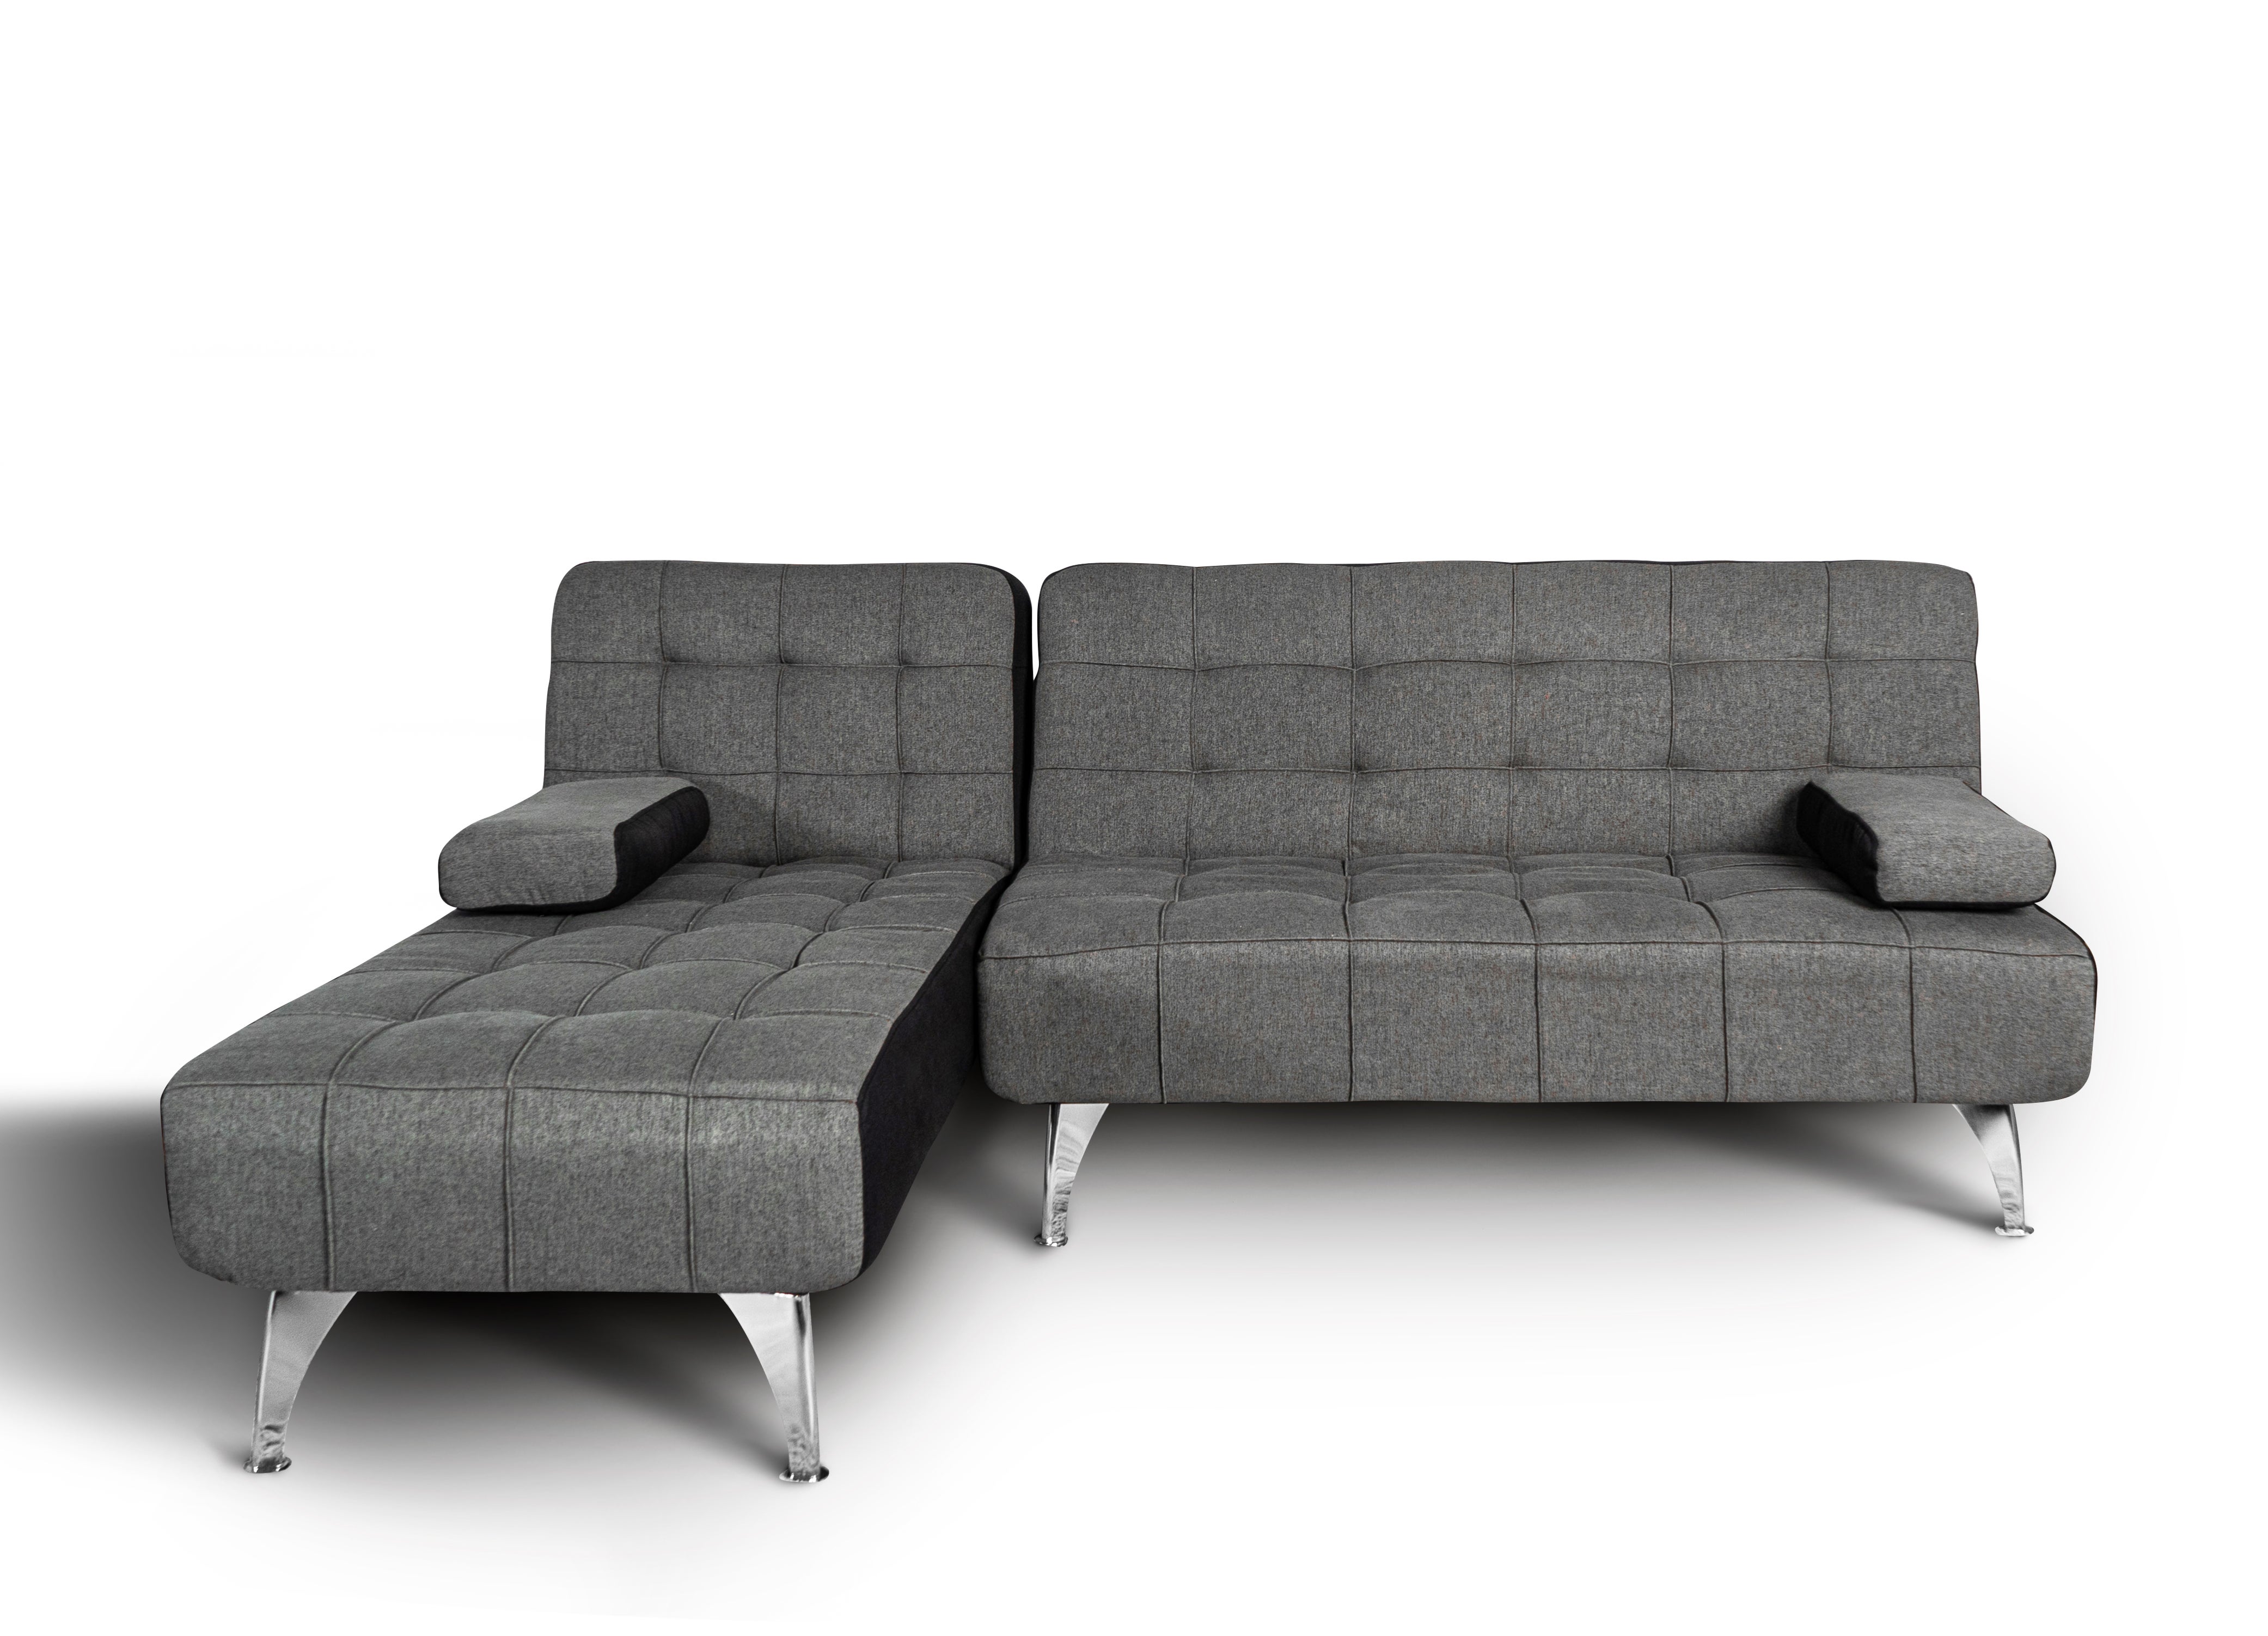 Oferta: Sofa Cama Chaise Longue XS + Mesa de Centro Gratis